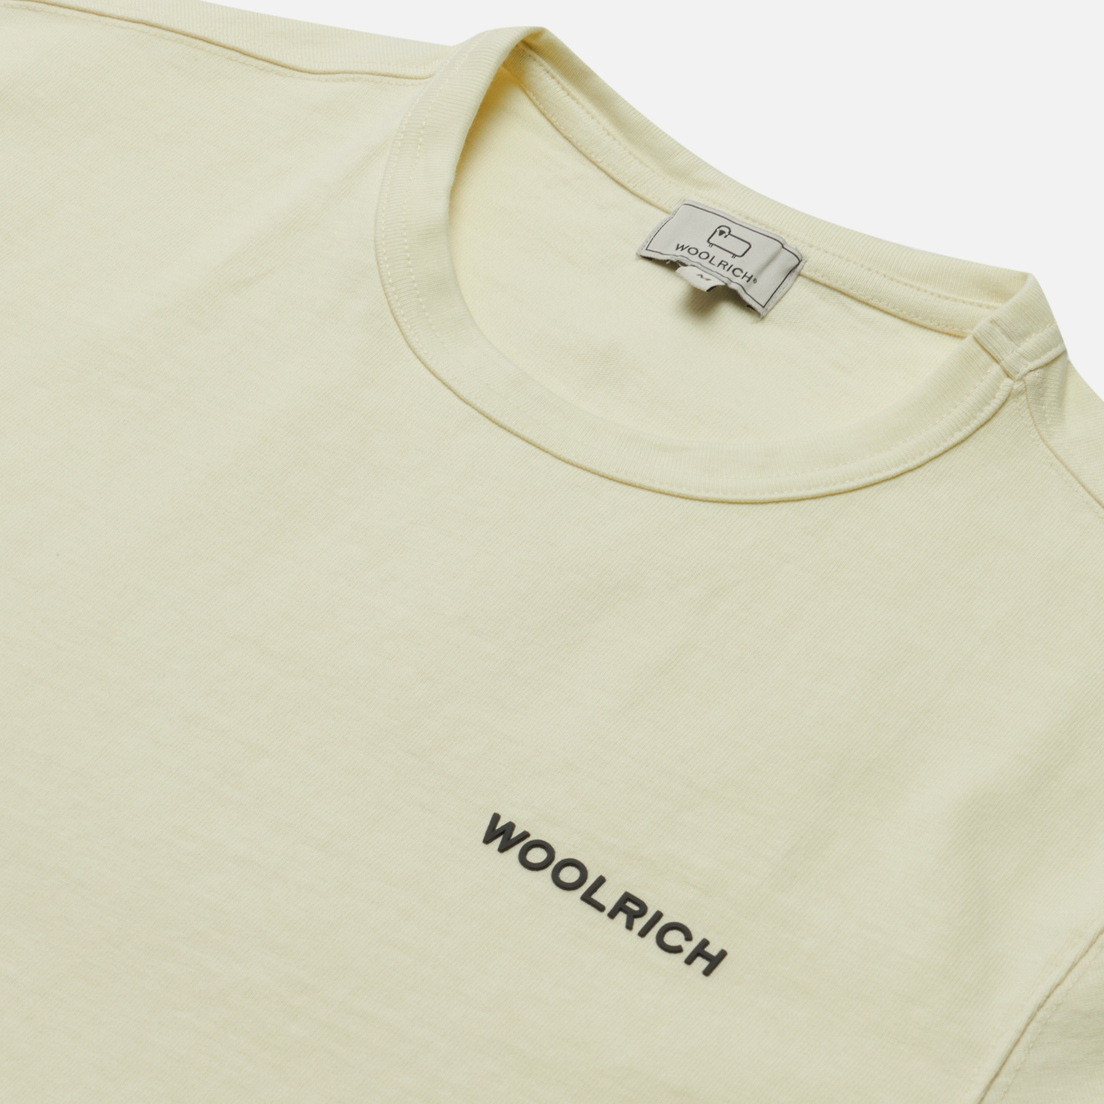 Woolrich Мужская футболка Outdoor